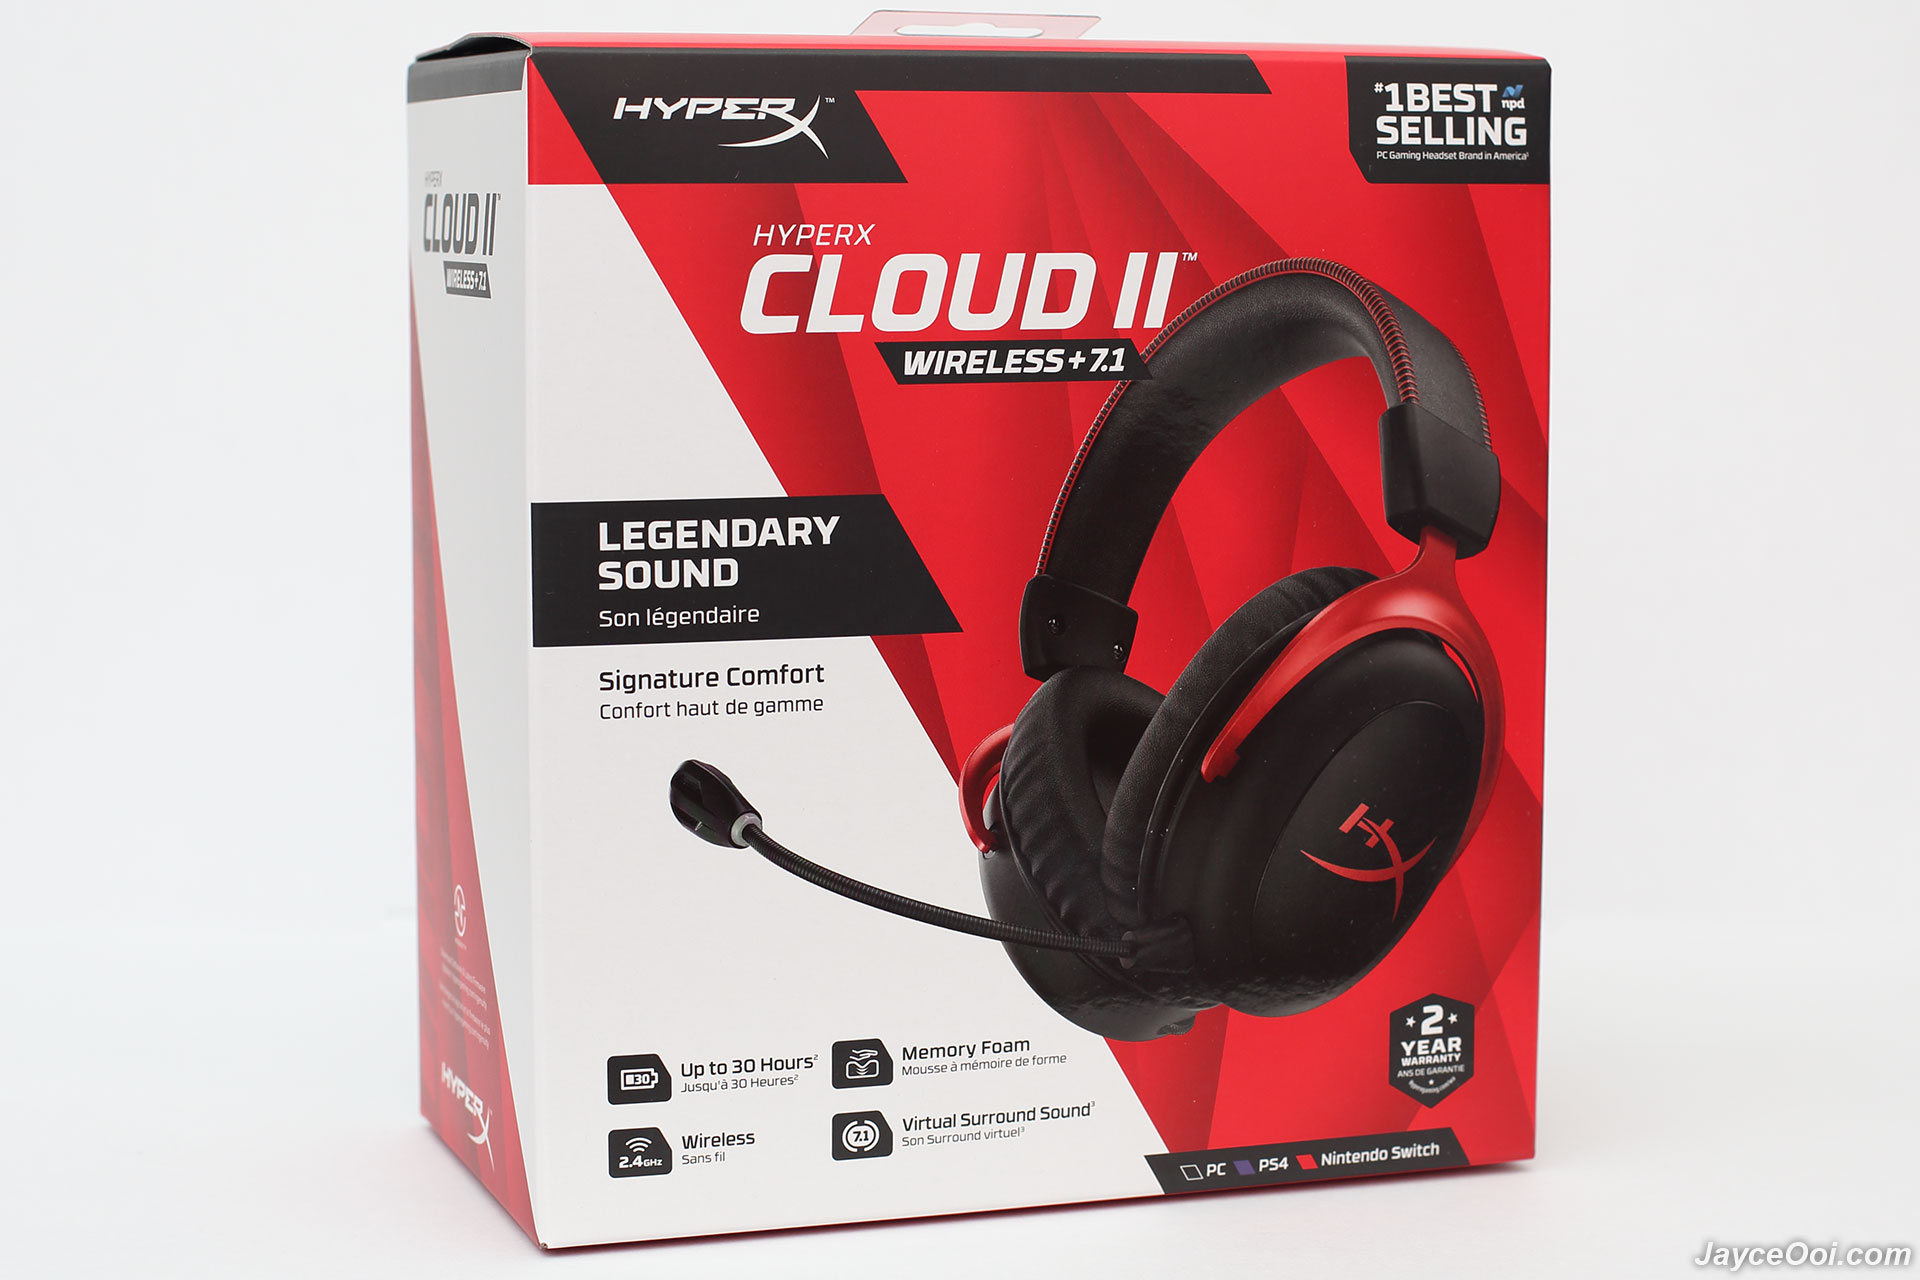 aangenaam Landgoed weggooien HyperX Cloud II Wireless Review - Excellent Virtual 7.1 Surround Sound  Gaming Headset - JayceOoi.com